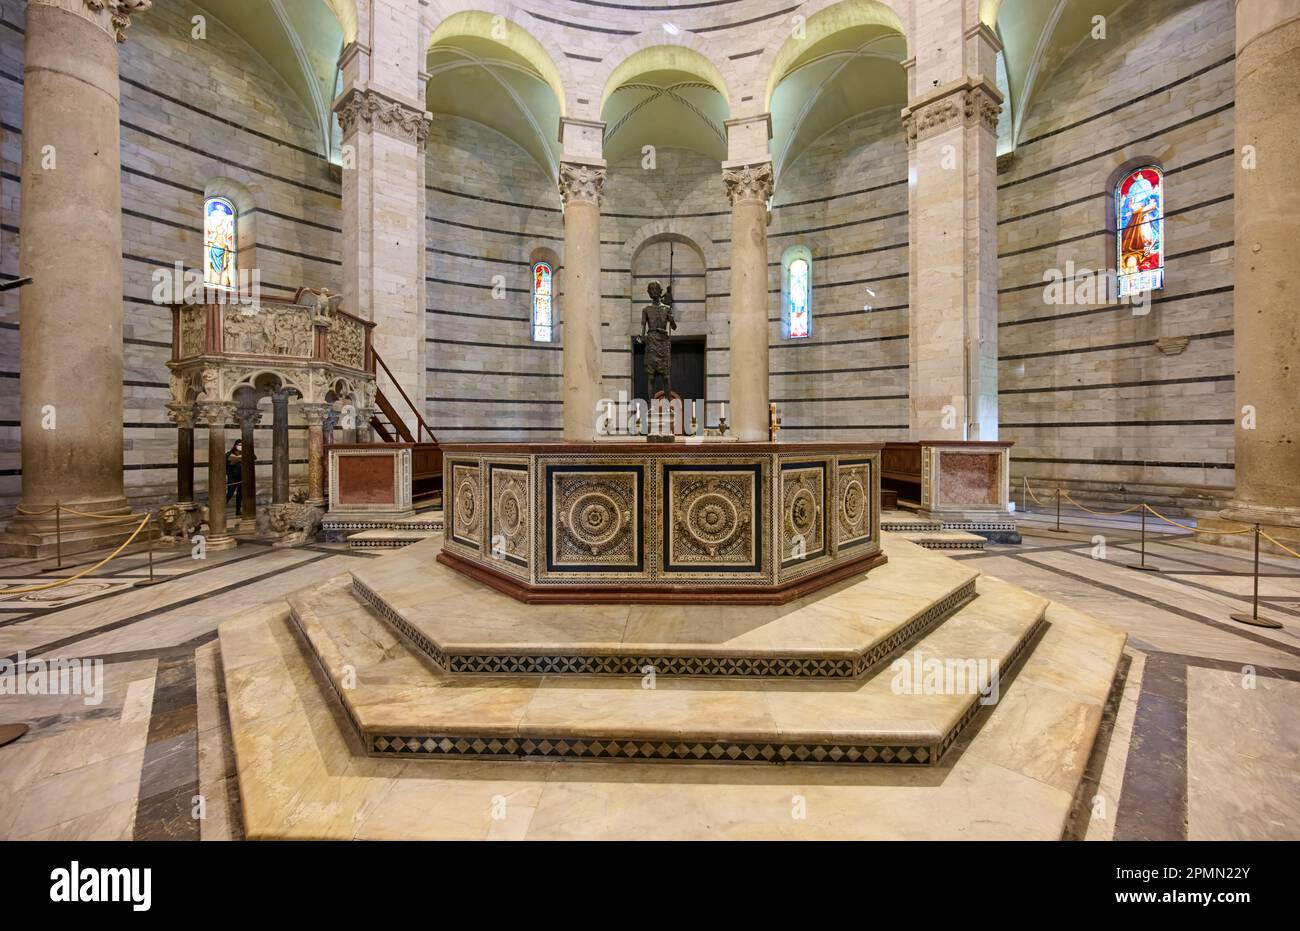 interior shot of The Baptistry of St. John, Battistero di San Giovanni, Pisa, Tuscany, Italy Stock Photo